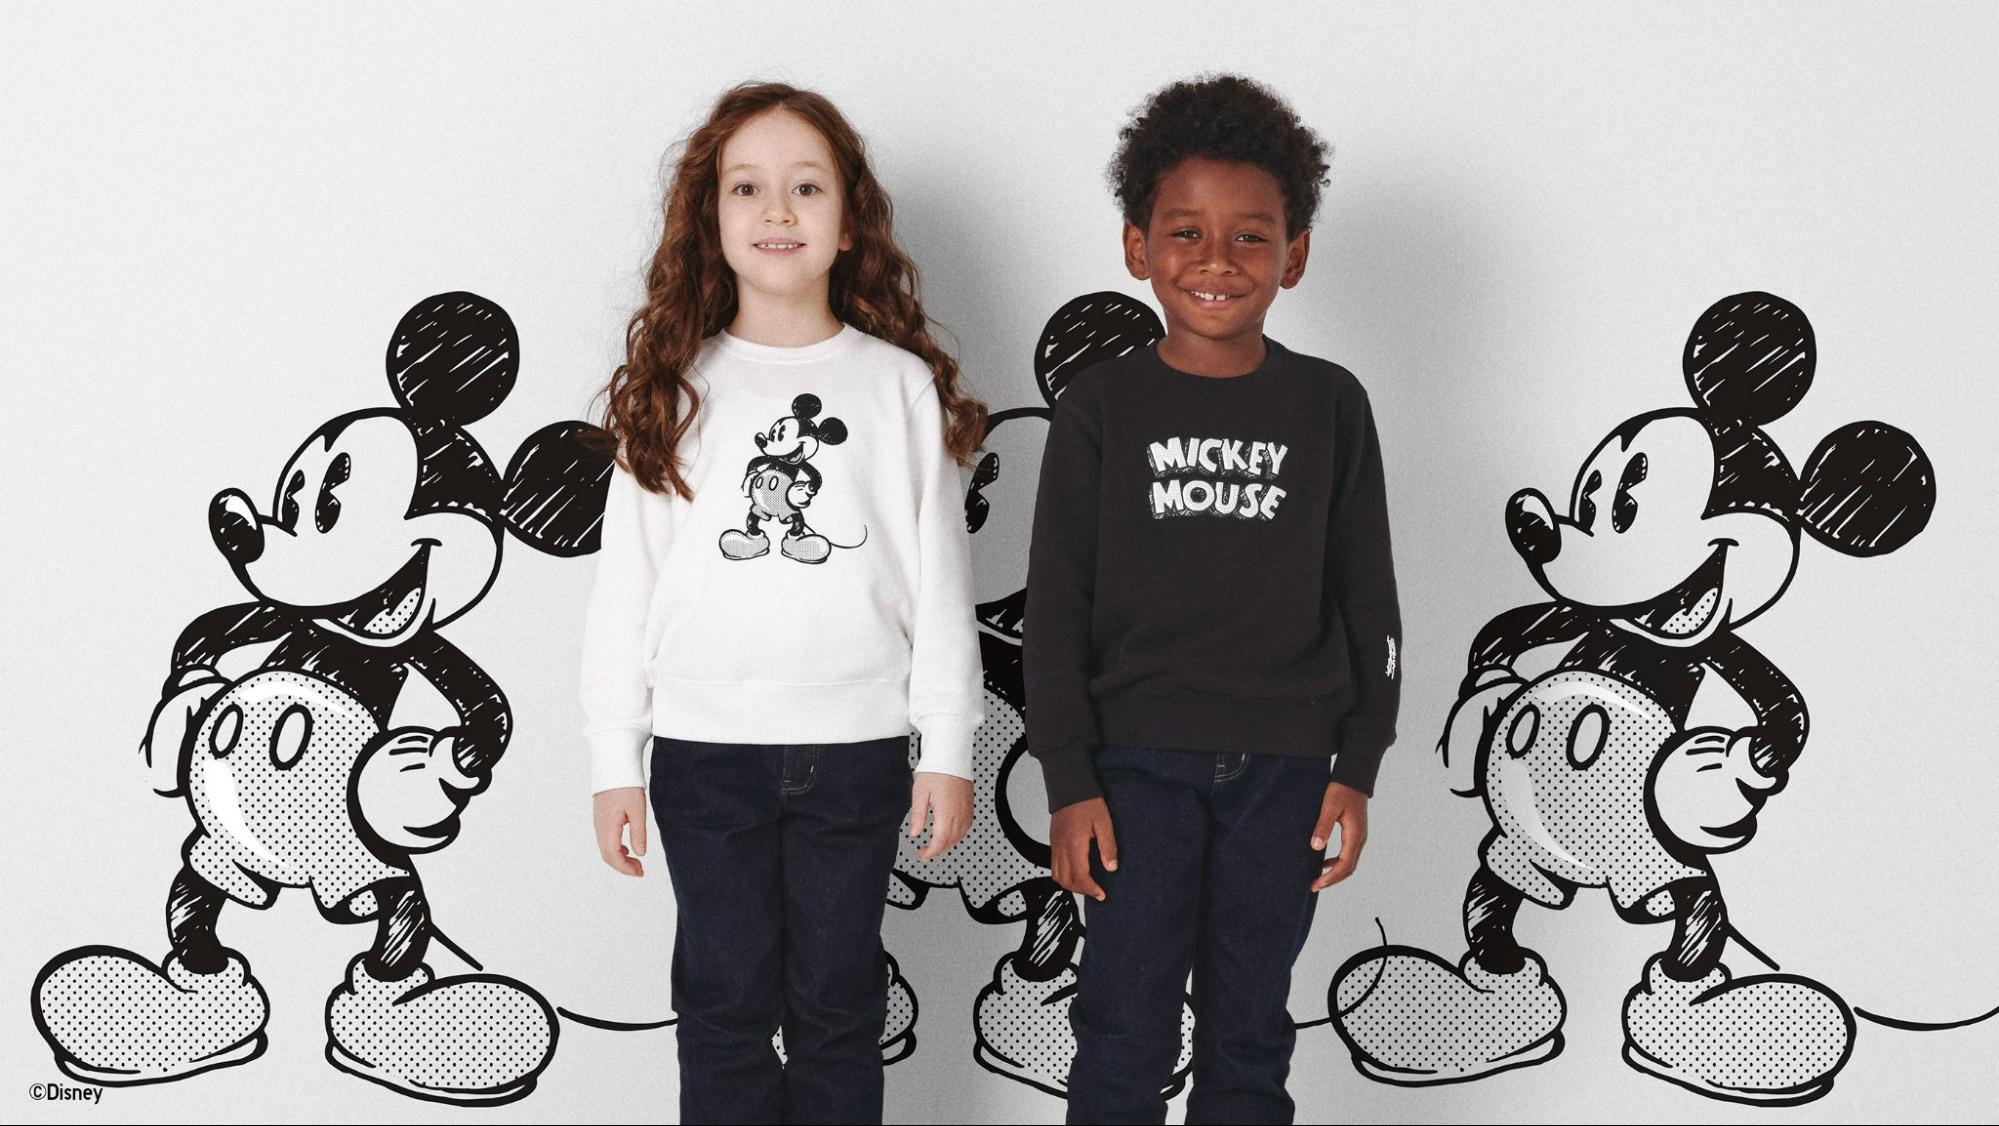 UNIQLO Monochrome Mickey Mouse Art Collection